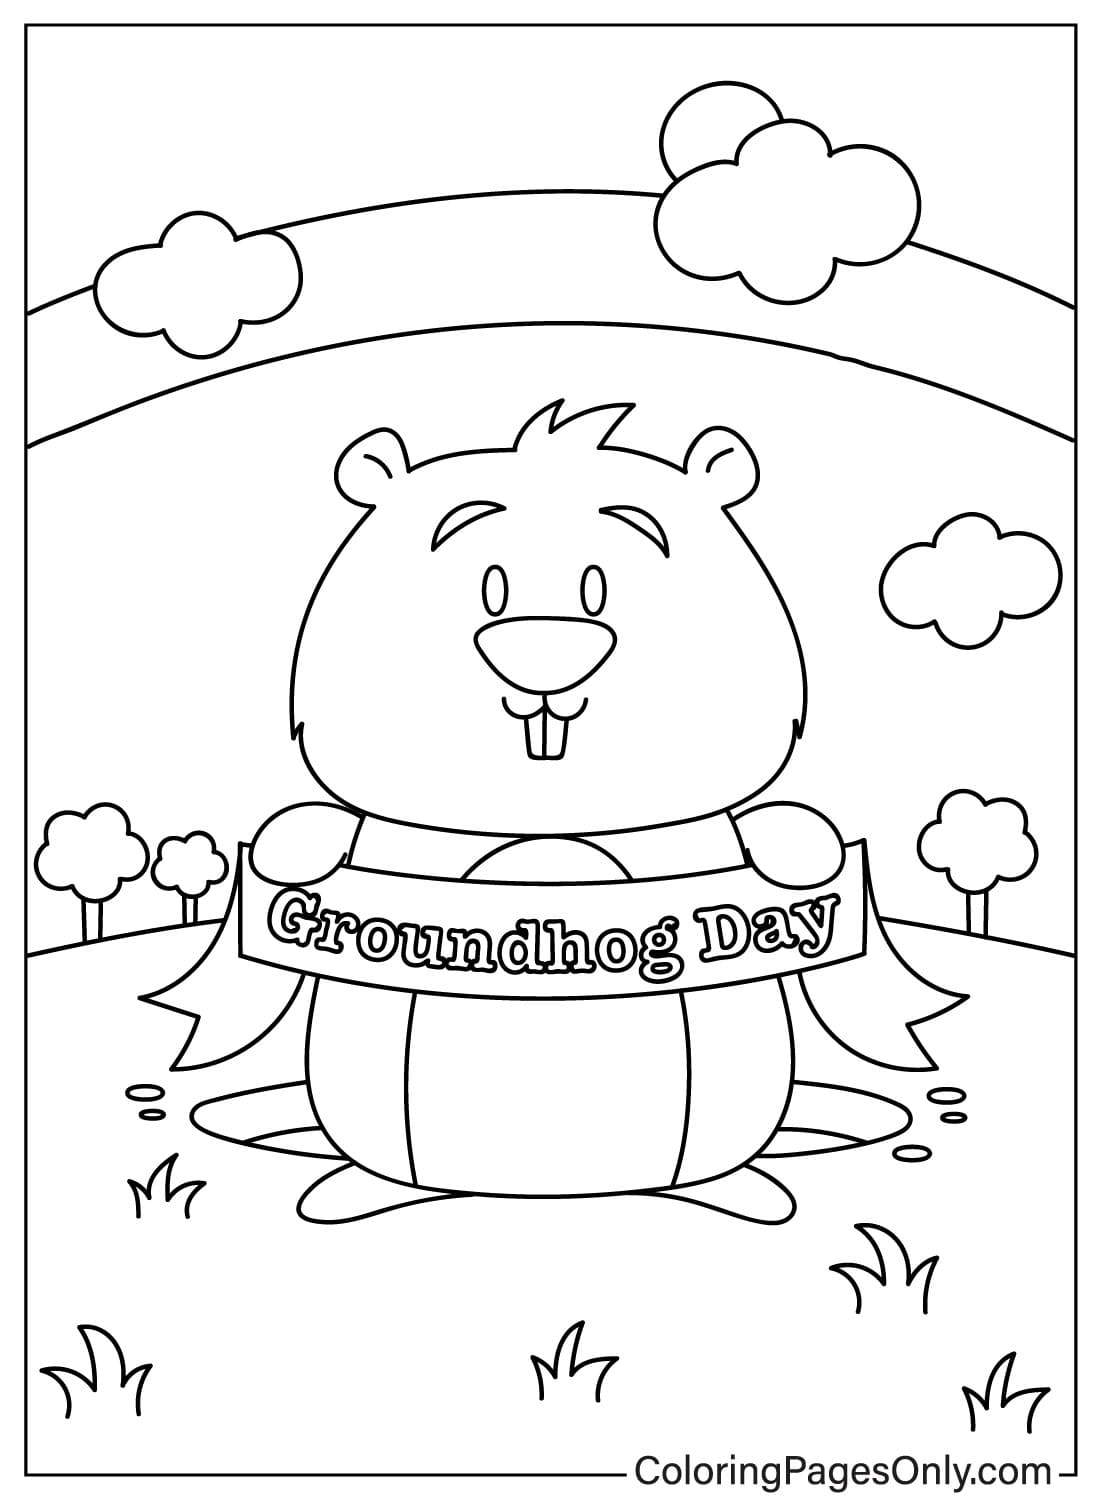 Página para colorir do Dia da Marmota para imprimir do Dia da Marmota